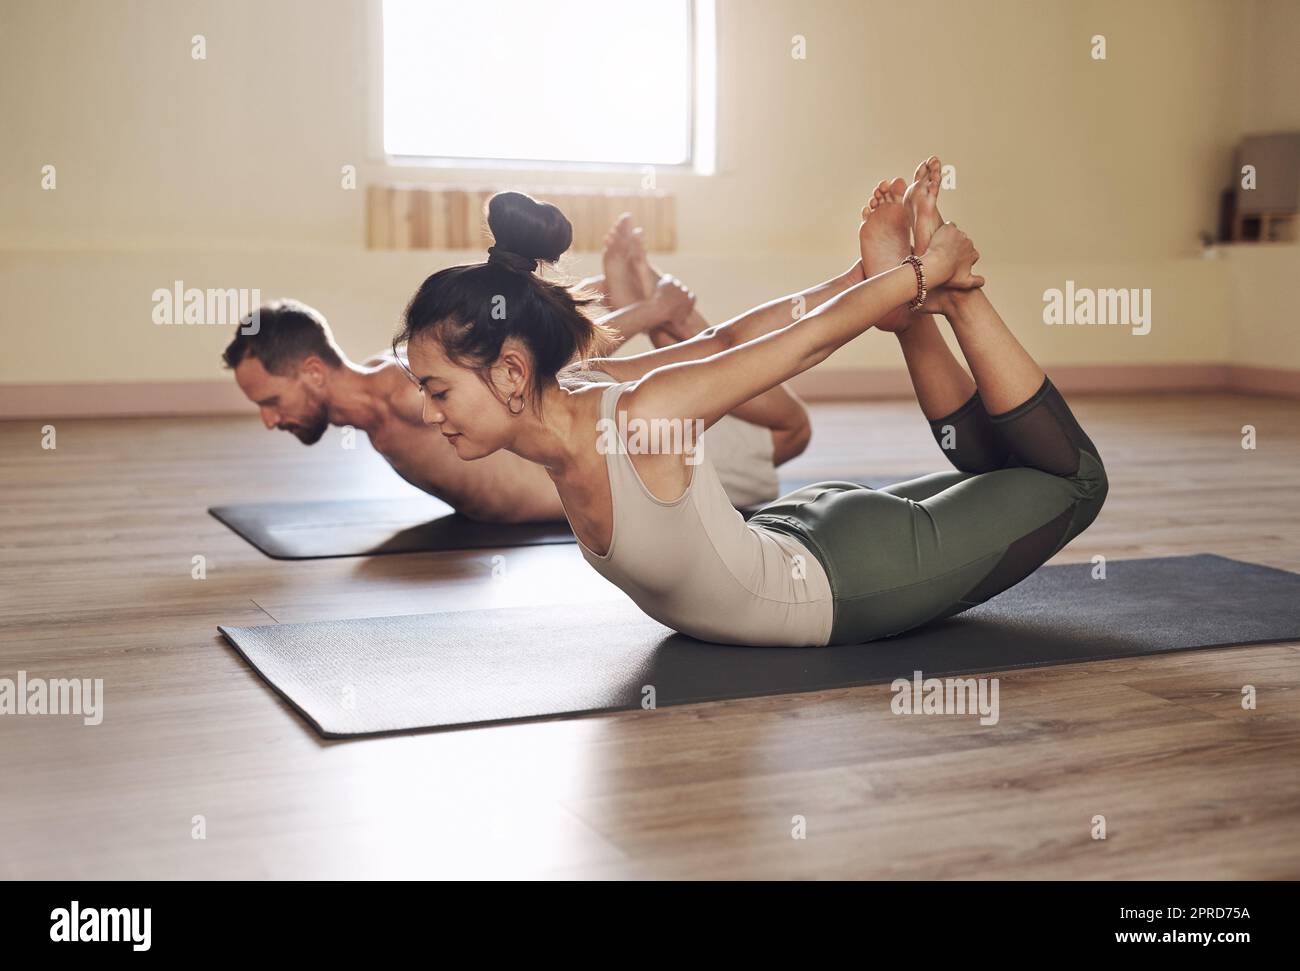 Ottenere più sano e senza stress una volta distendersi alla volta. Shot completo di due giovani che si allenano insieme in una lezione di yoga. Foto Stock